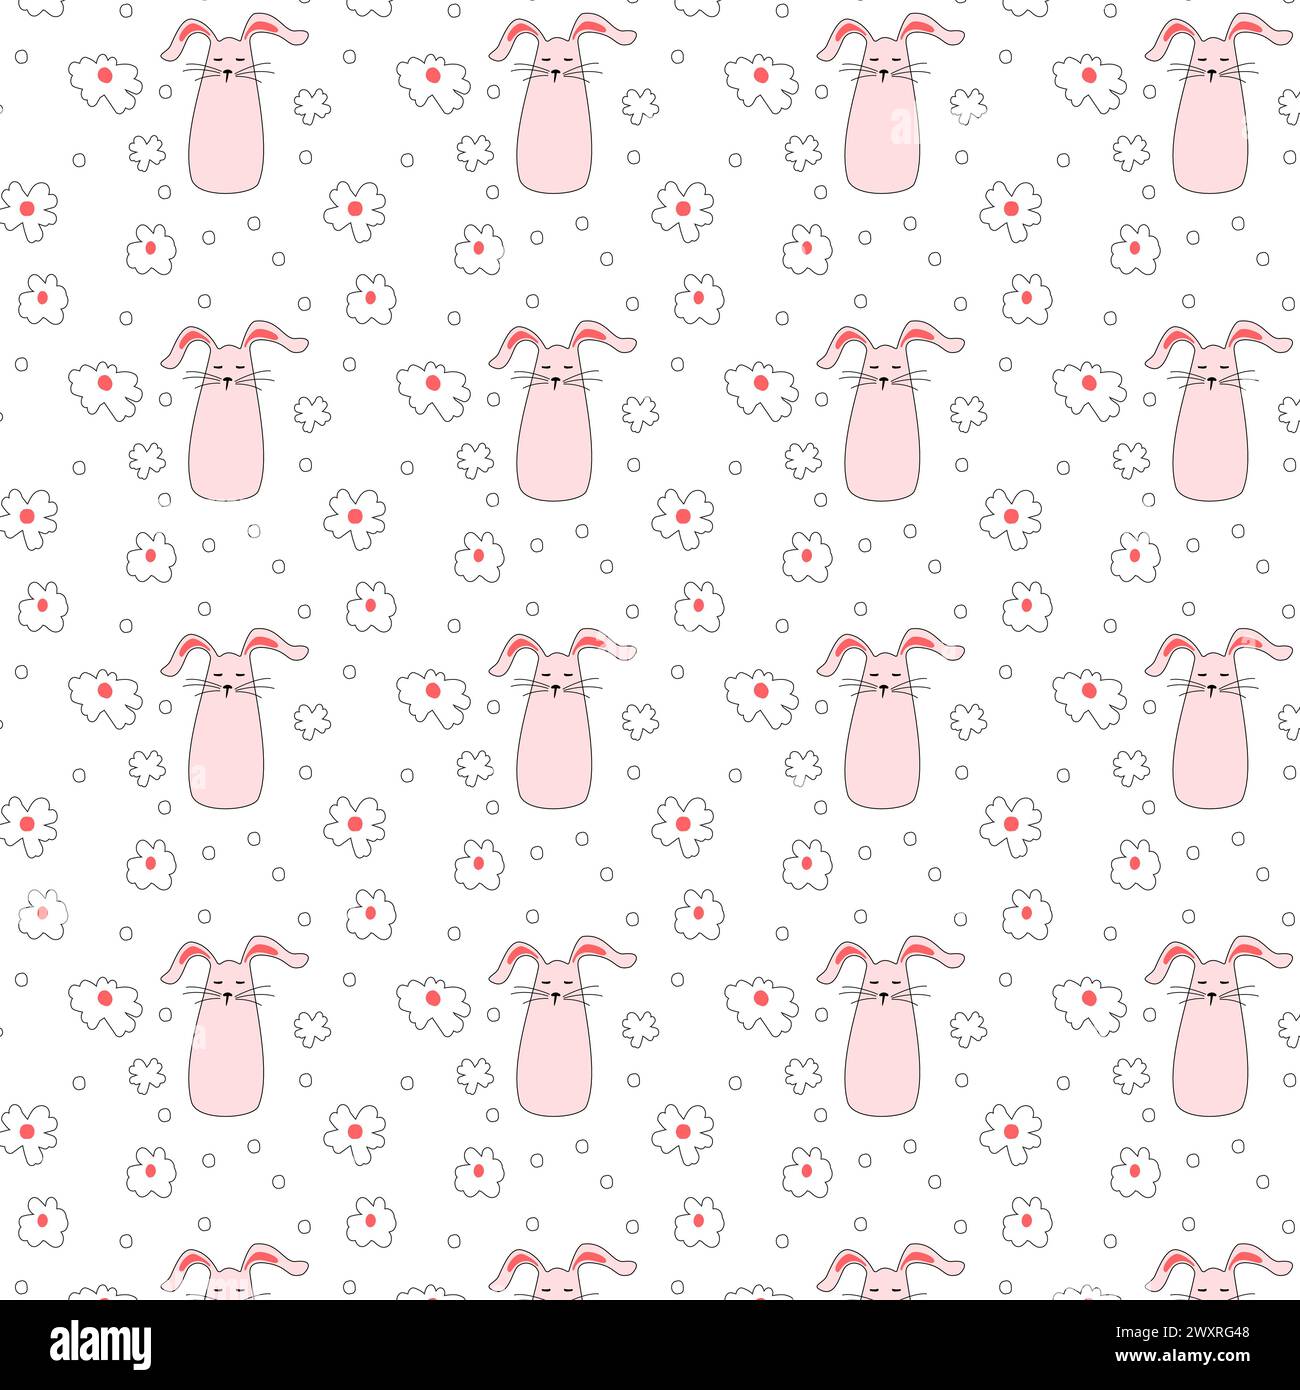 Nahtloses Muster mit rosa Häschen mit Blumen. Osterhasen zum Bedrucken von Kinderprodukten, Stoff und Tapeten auf weißem Hintergrund. Zeichentrickgrafik-Vektor-Illustration. Stock Vektor